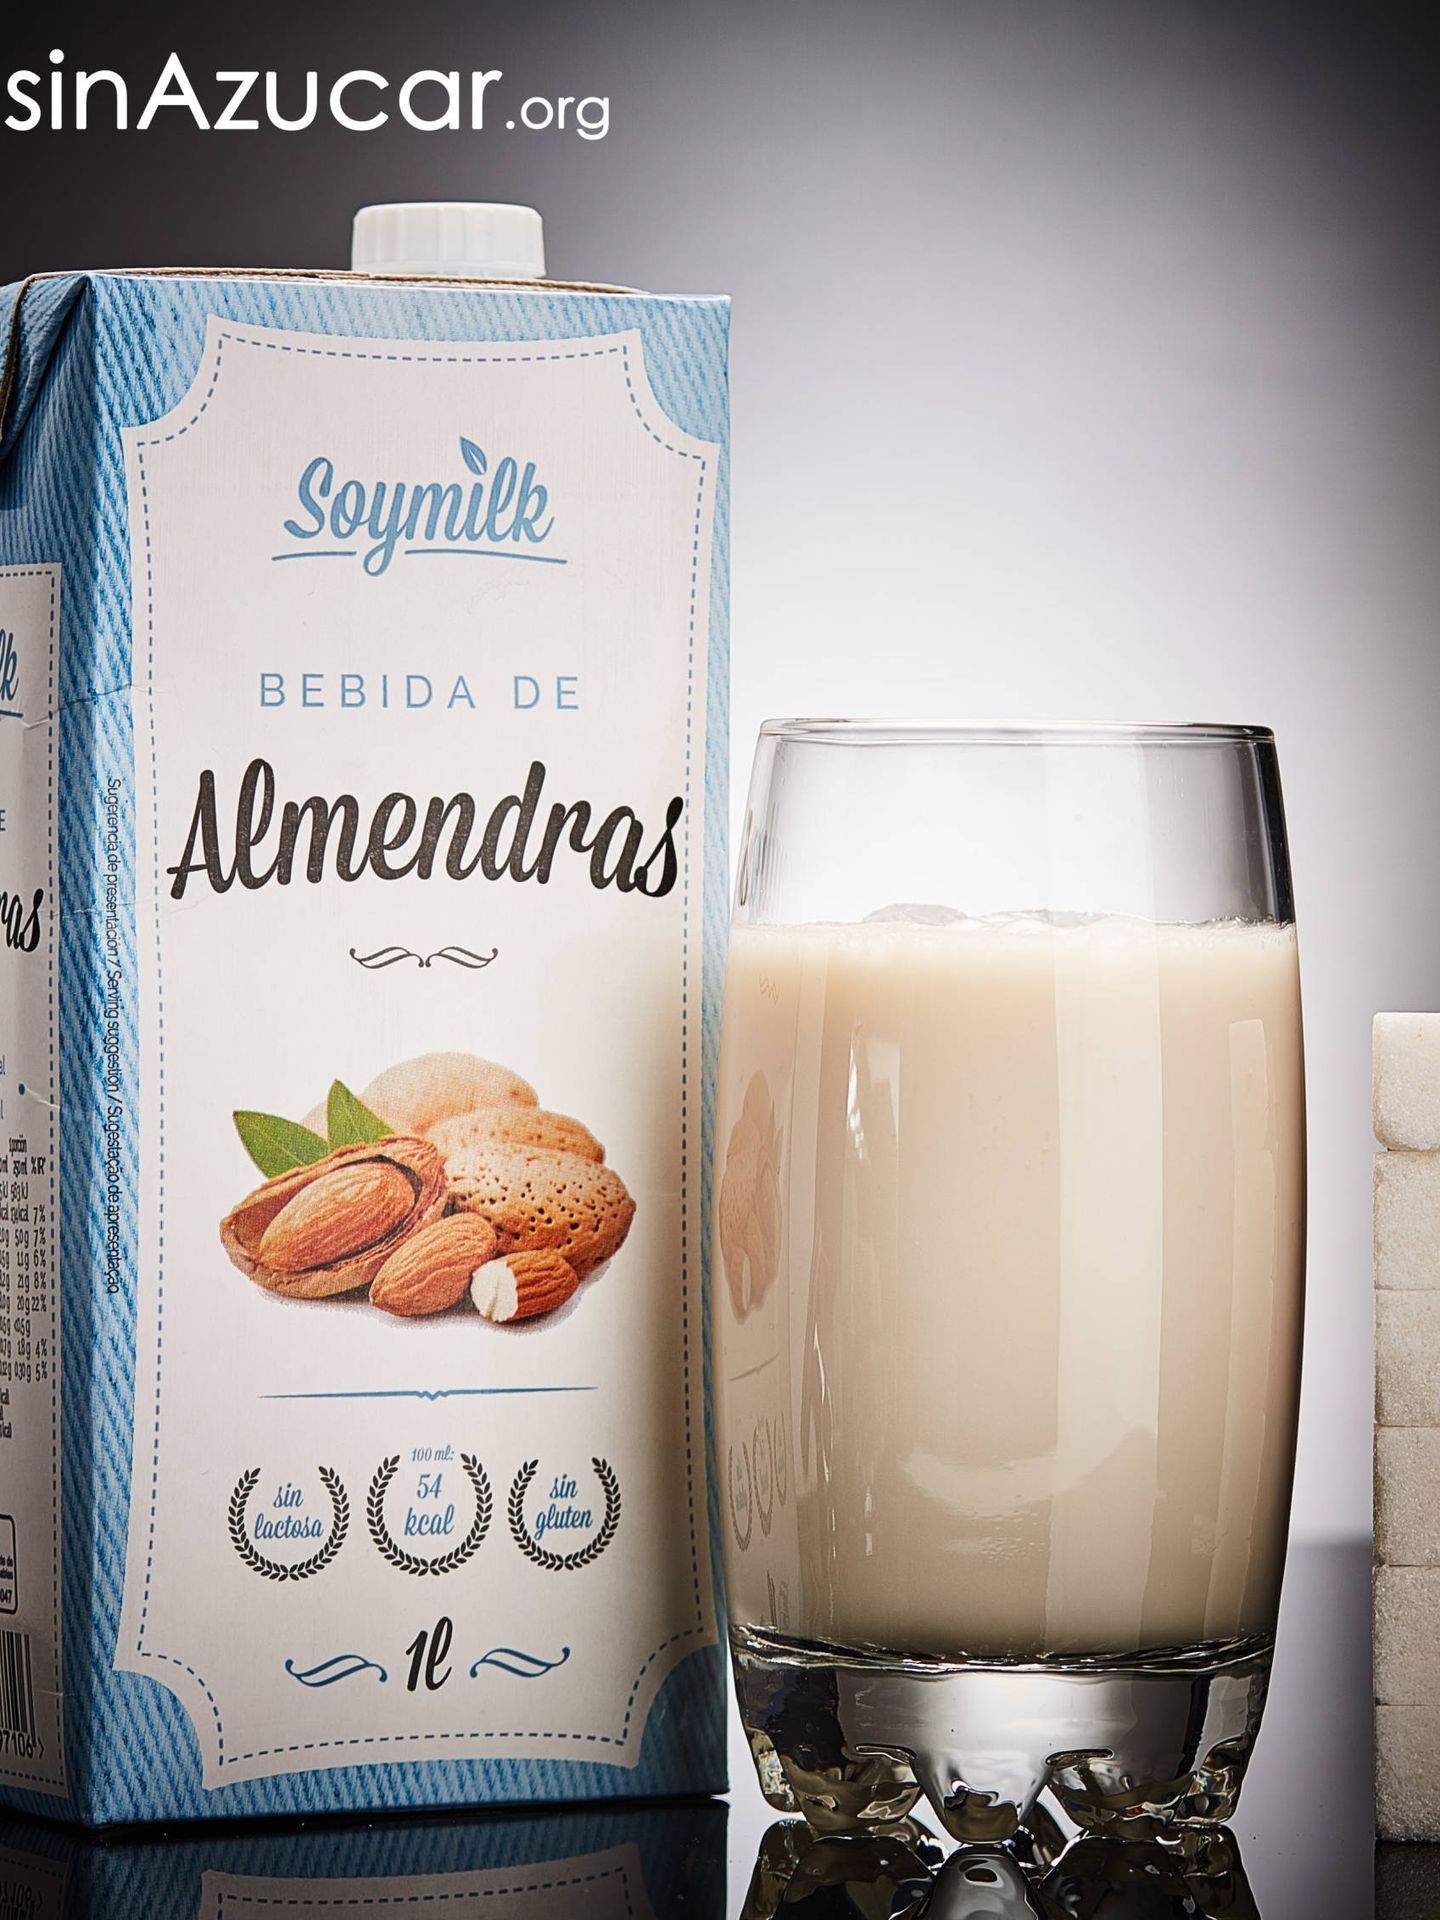 Un vaso de bebida de almendras de la marca Soymilk (300ml) contiene 24g de azúcar, equivalente a 6 terrones. (sinazucar.org)